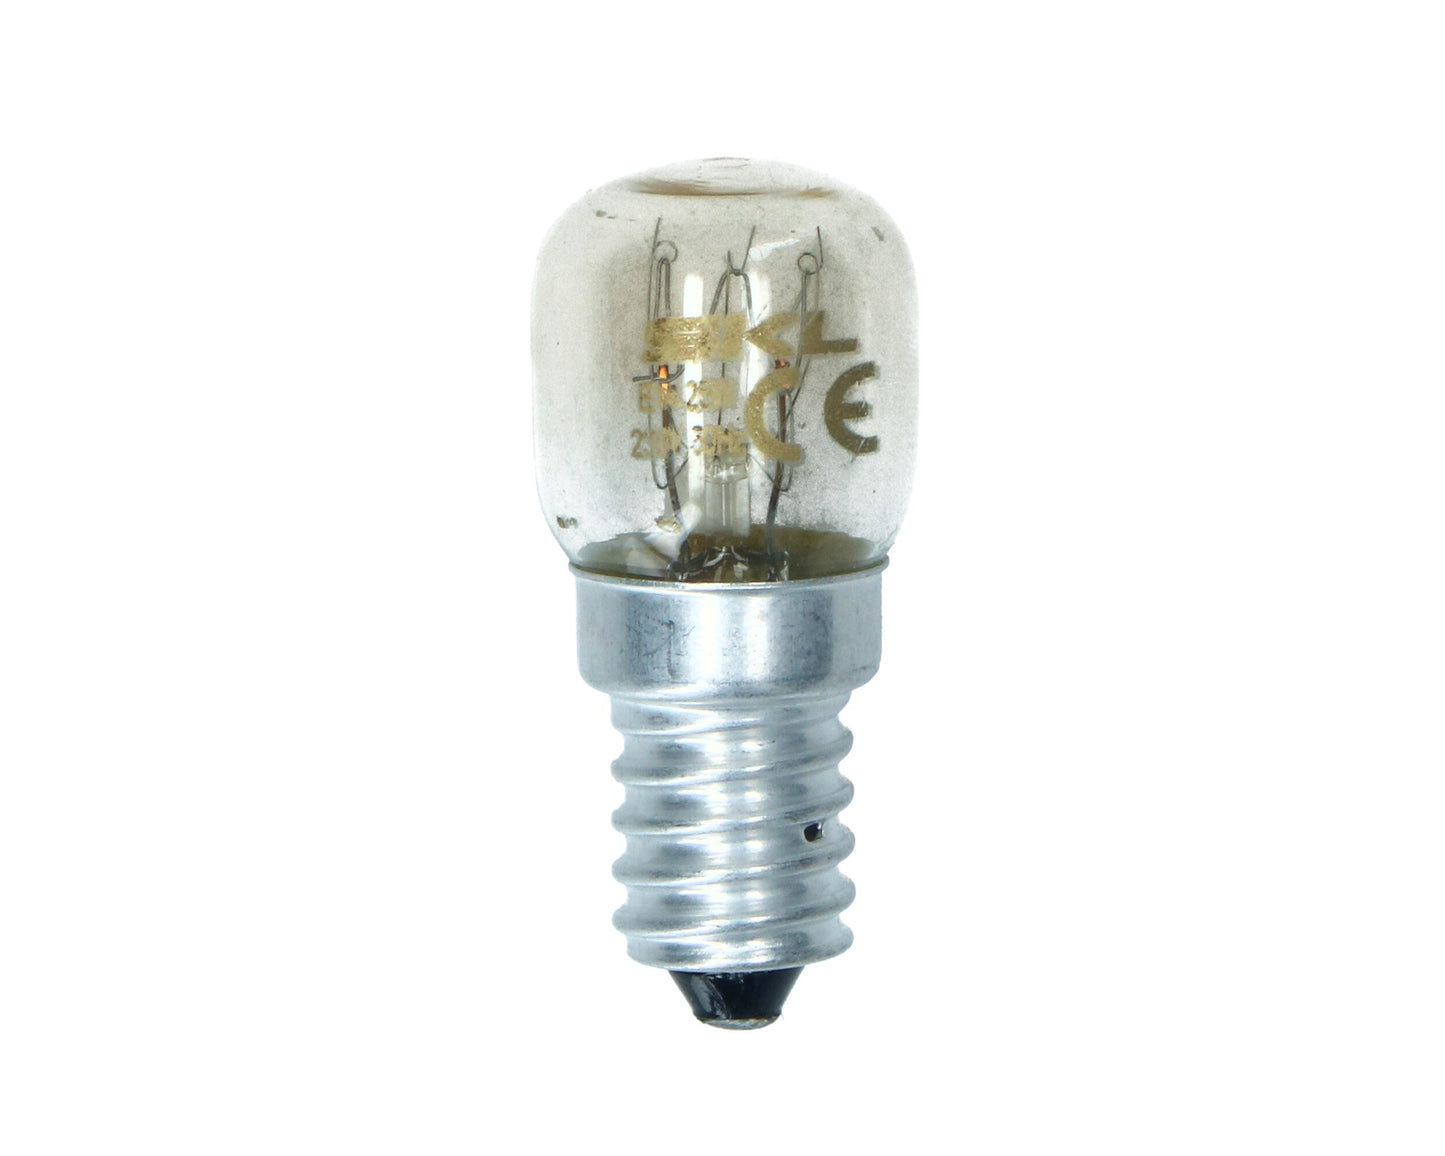 Oven Lamp Light Bulb E14 SES Pygmy for Samsung Cooker 25W 300° Degrees